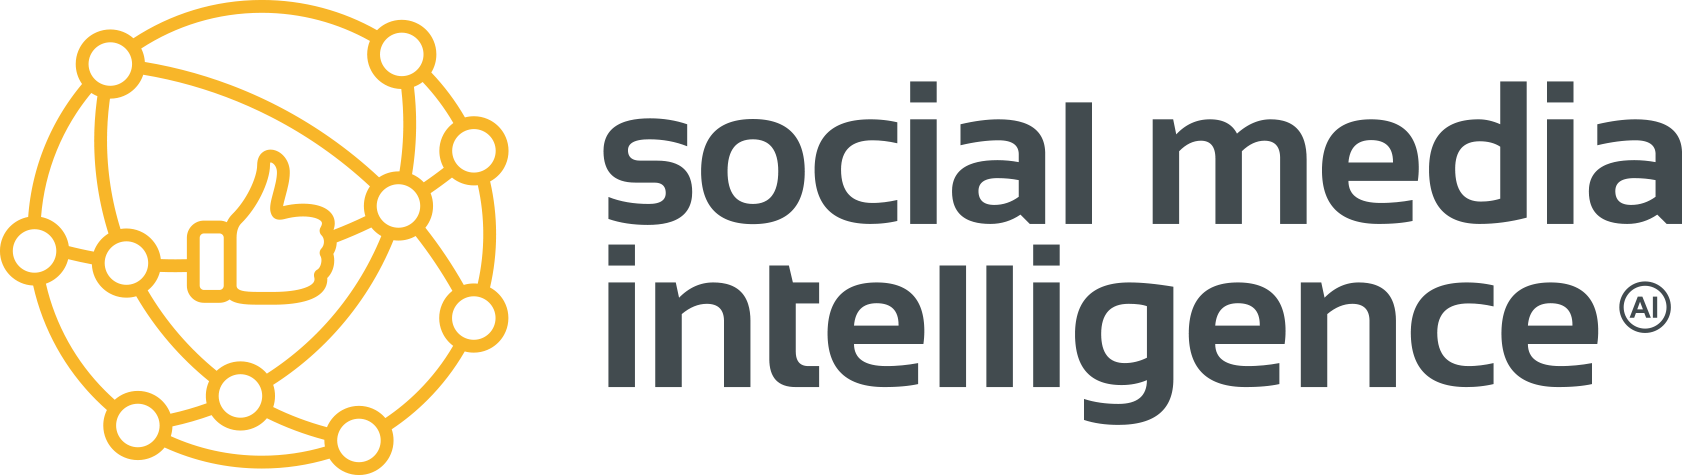 social_media_intelligence_jasne_tlo-3